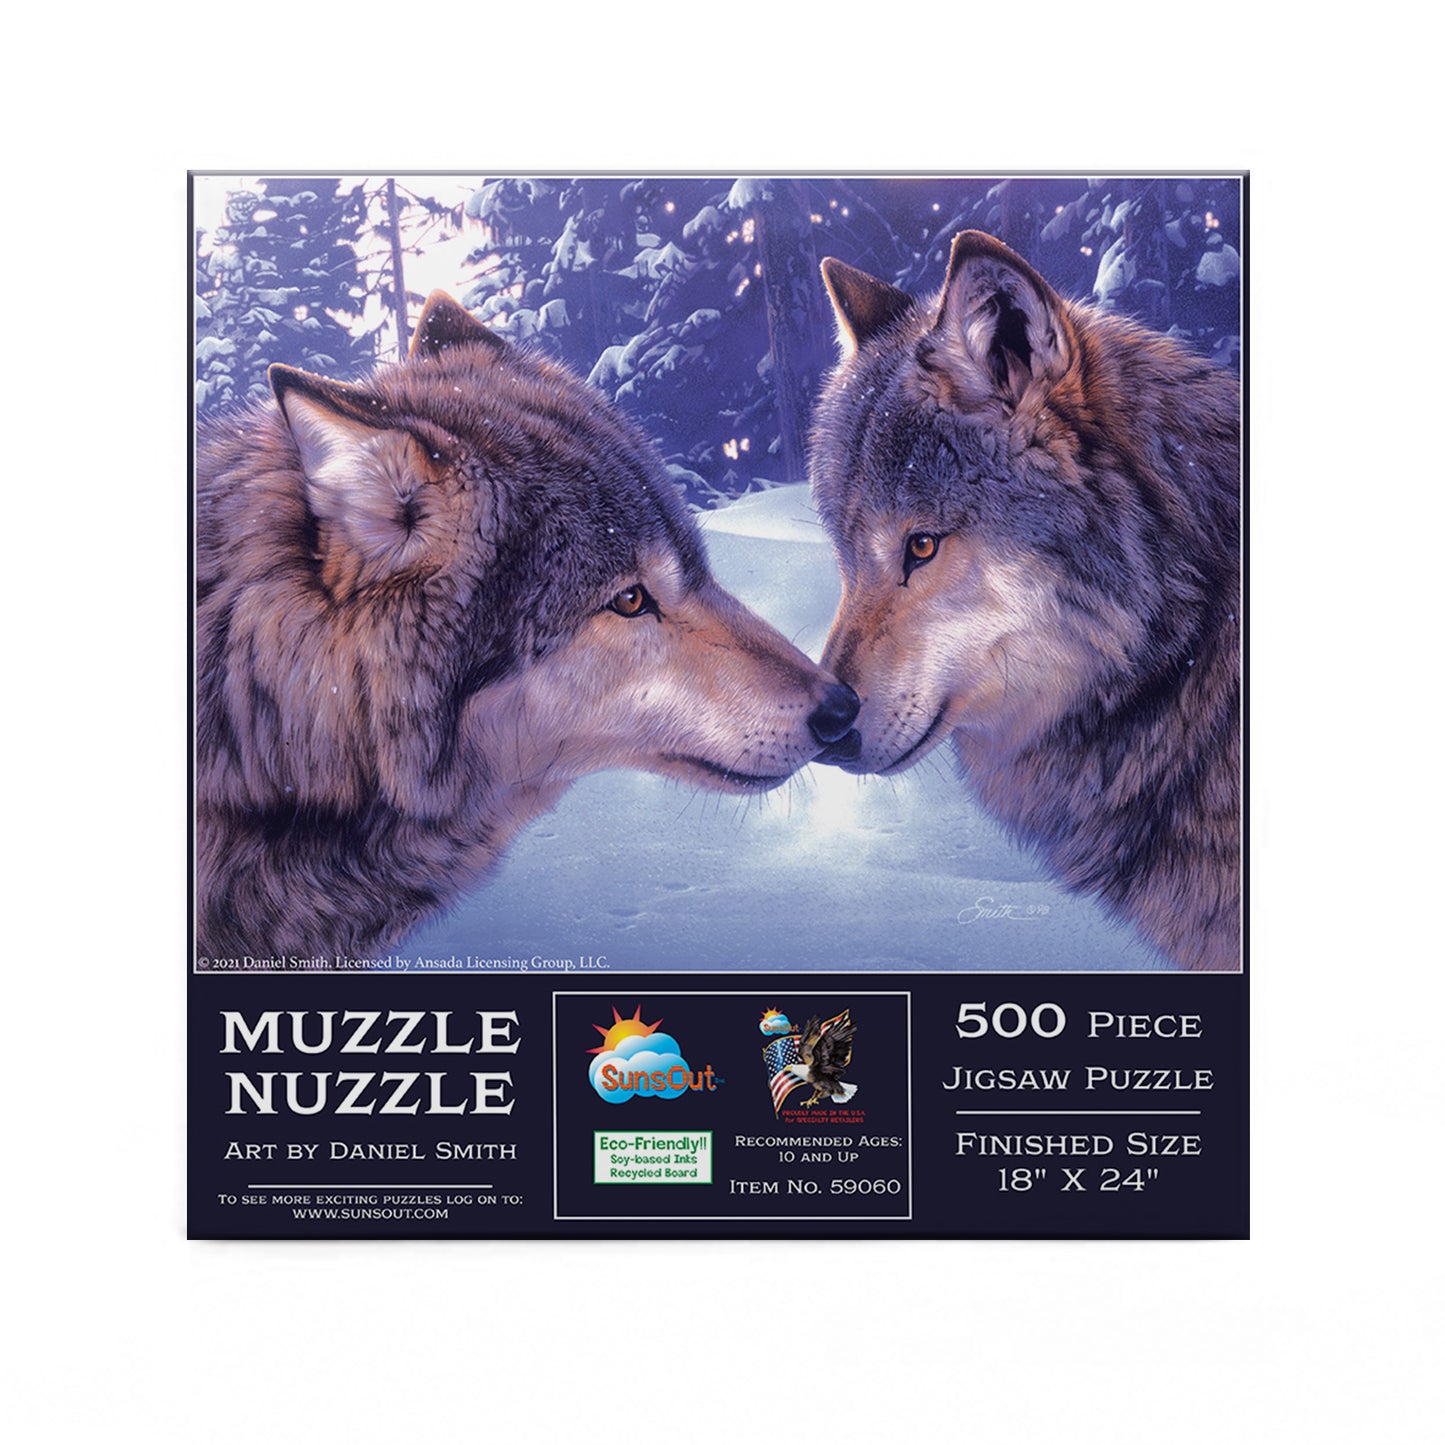 Muzzle Nuzzle - 500 Piece Jigsaw Puzzle